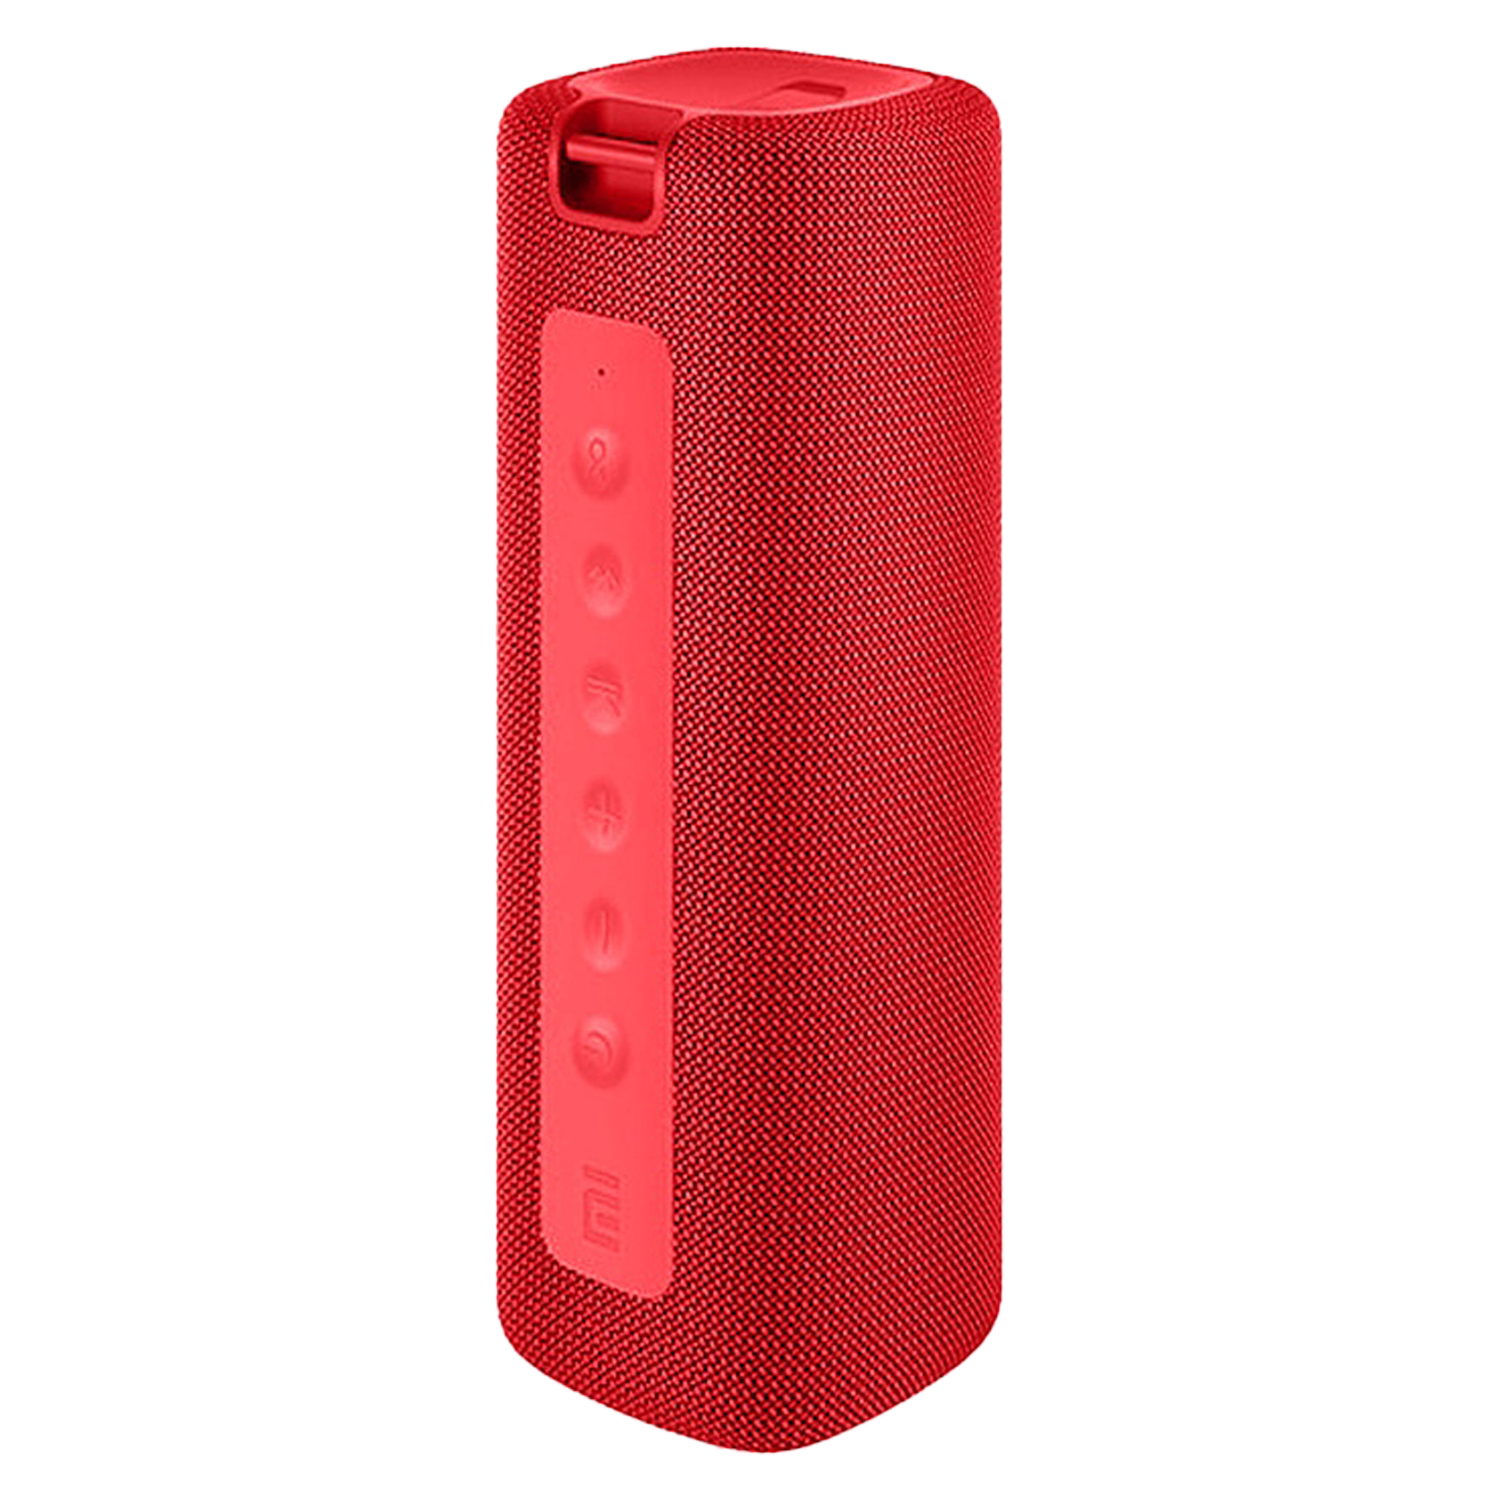 Caixa de Som Xiaomi Mi Portable QBH4242GL / Bluetooth 5.0 / Proteção IPX7 / Microfone - Vermelho (MDZ-36-DB)